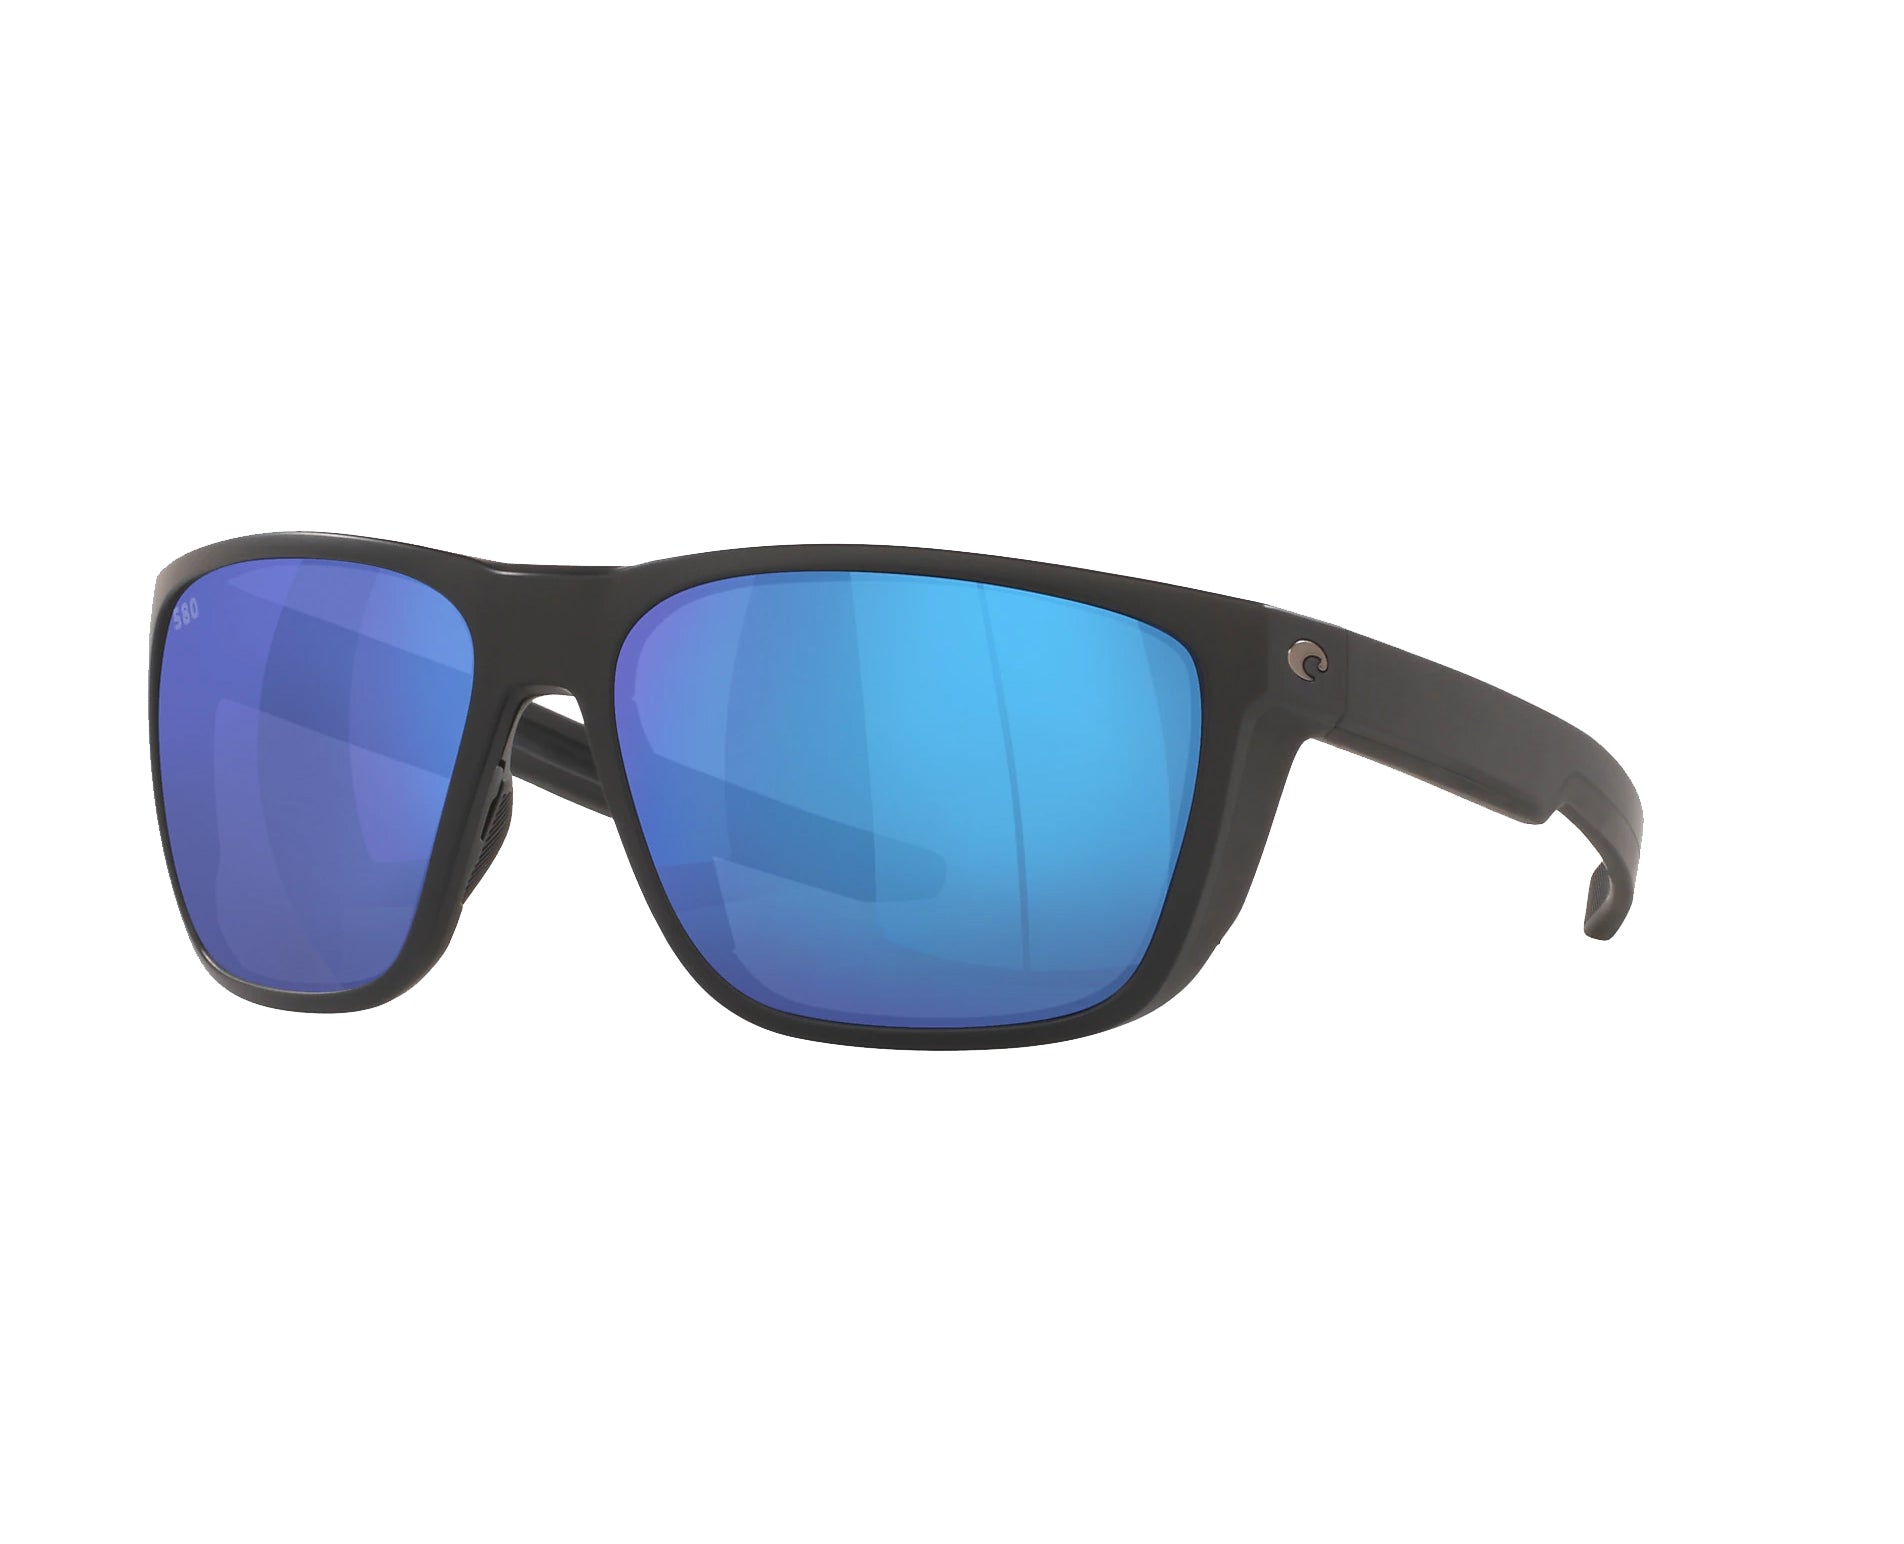 Costa Del Mar Ferg Polarized Sunglasses MatteBlack BlueMirror 580G